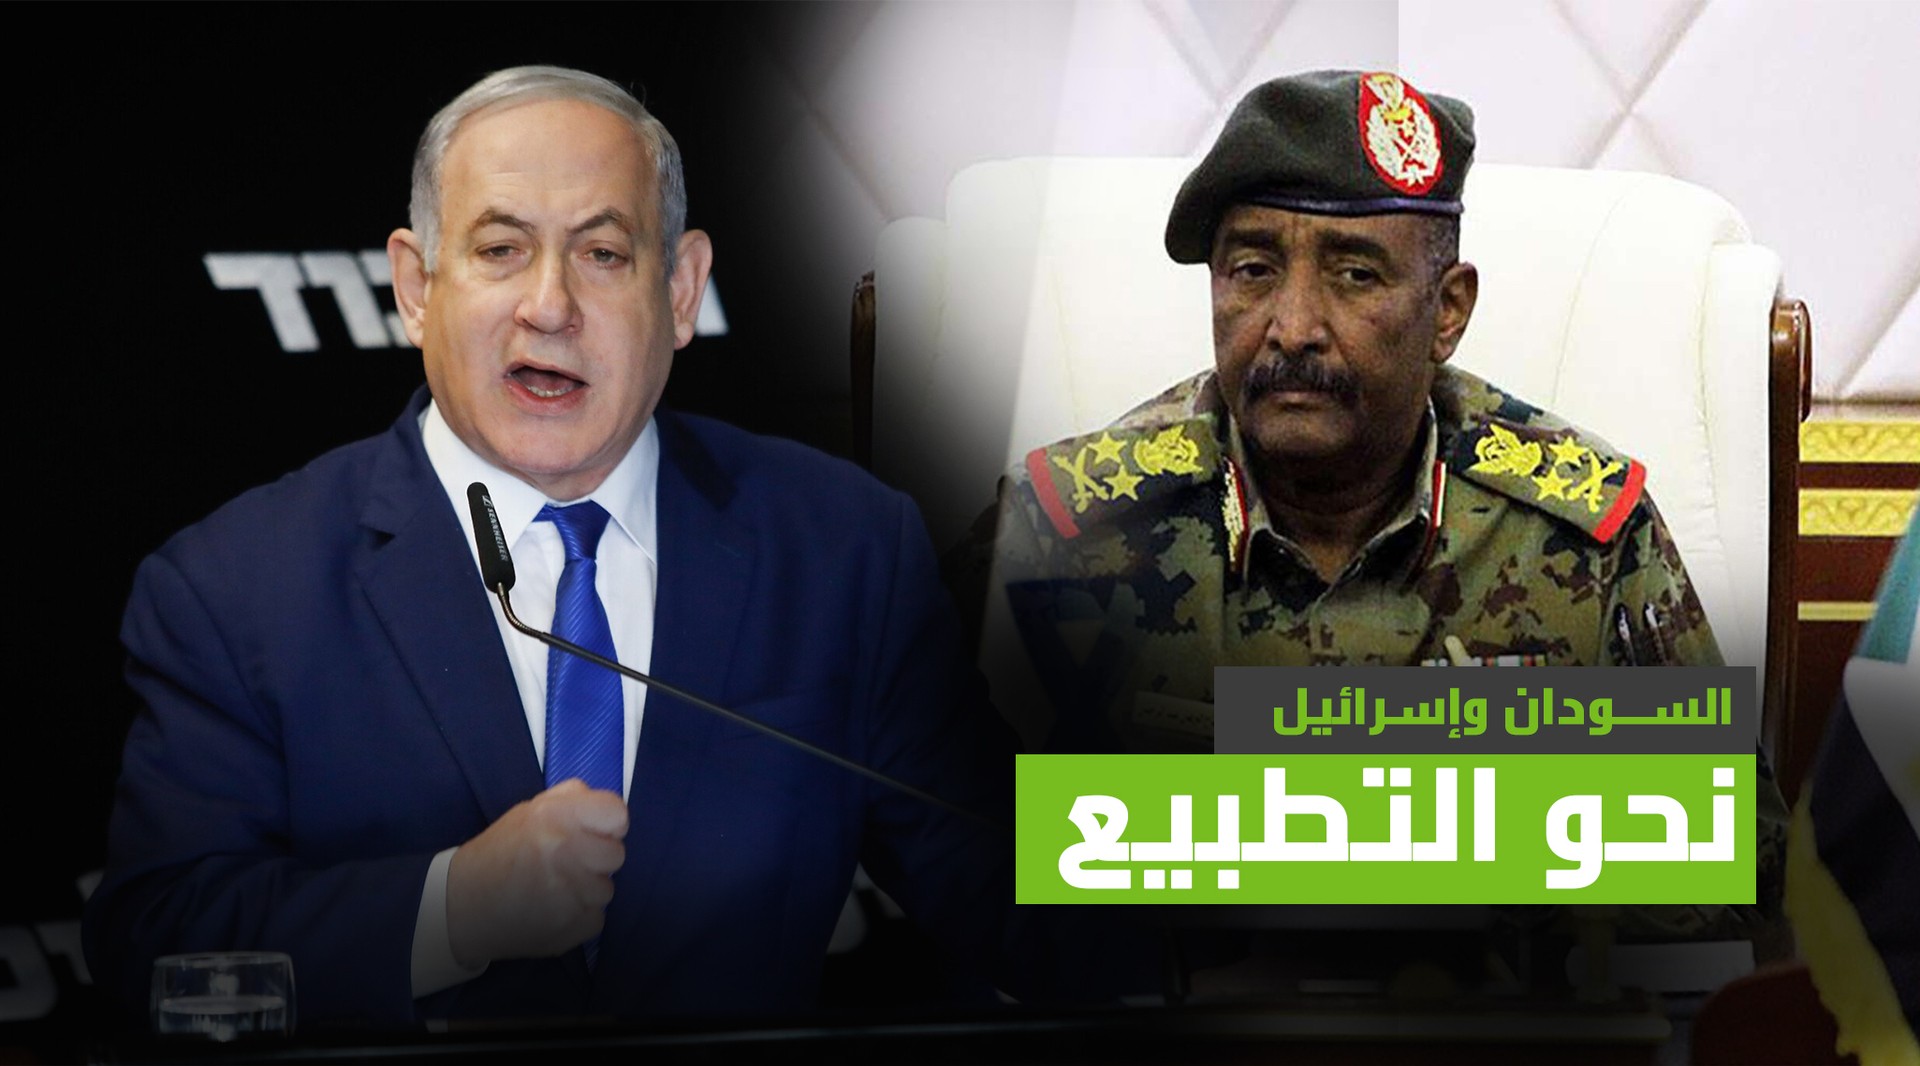 تطبيع العلاقات بين السودان وإسرائيل وأول تعليق رسمي للرئيس السيسي